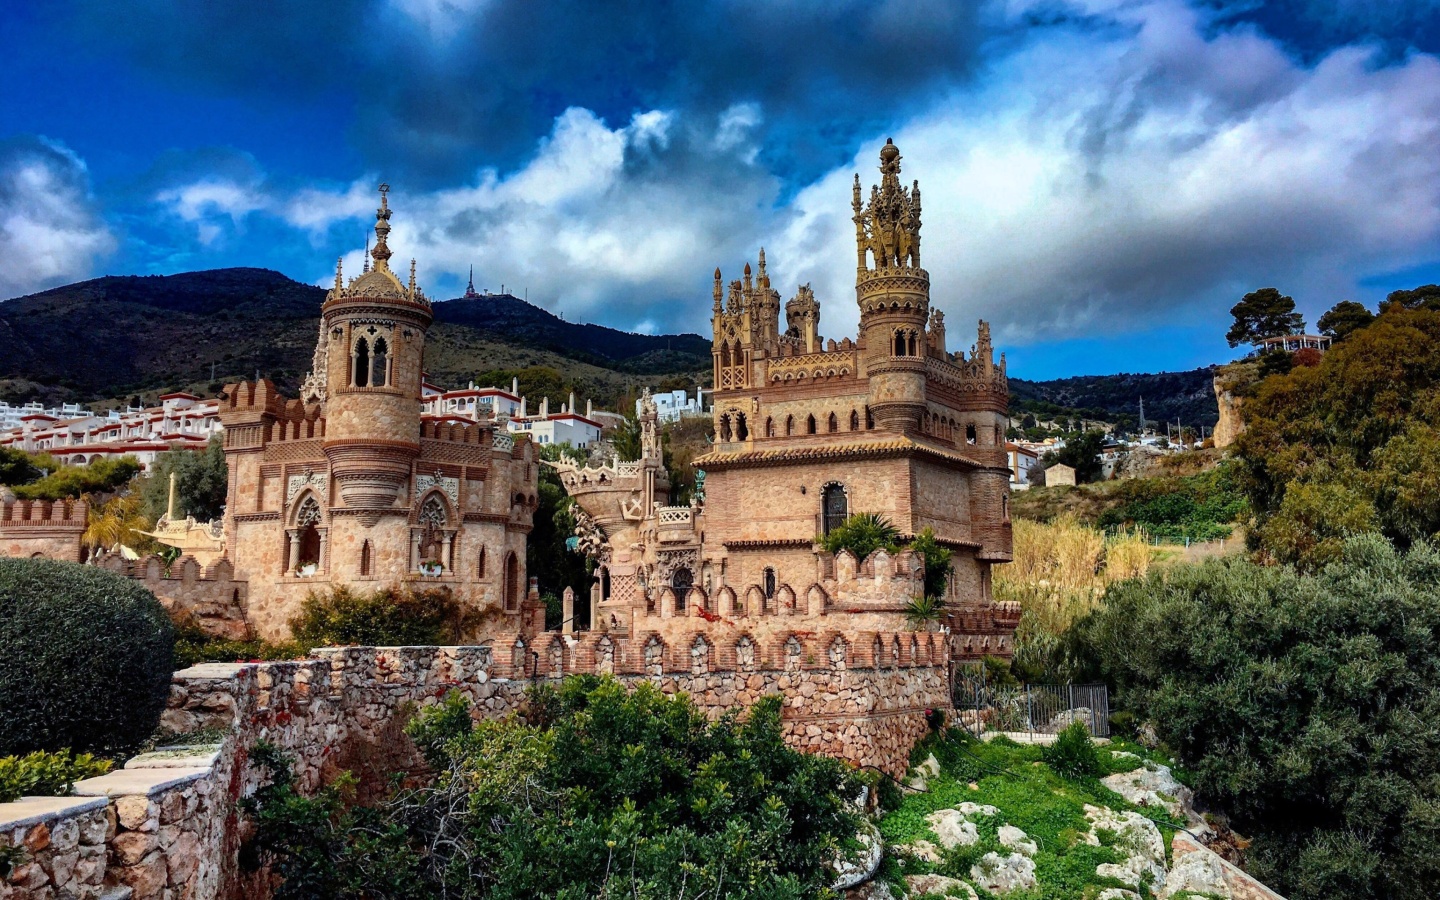 Castillo de Colomares in Spain Benalmadena screenshot #1 1440x900